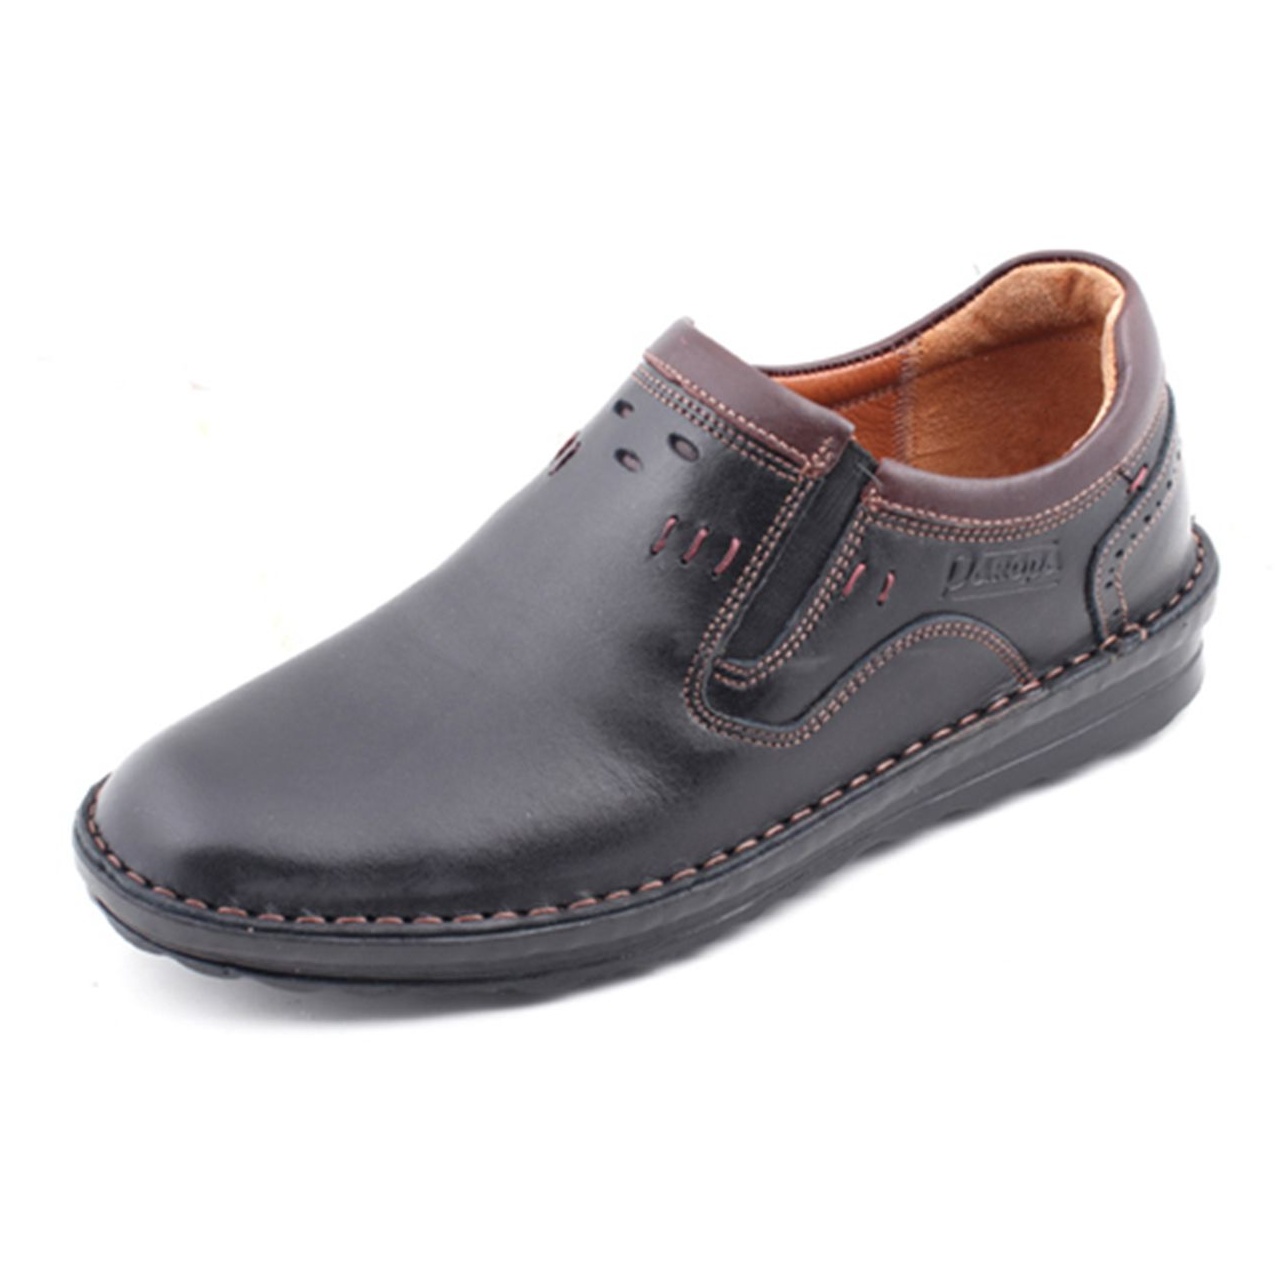 کفش مردانه پاروپا مدل پاتریک کد 60116501656